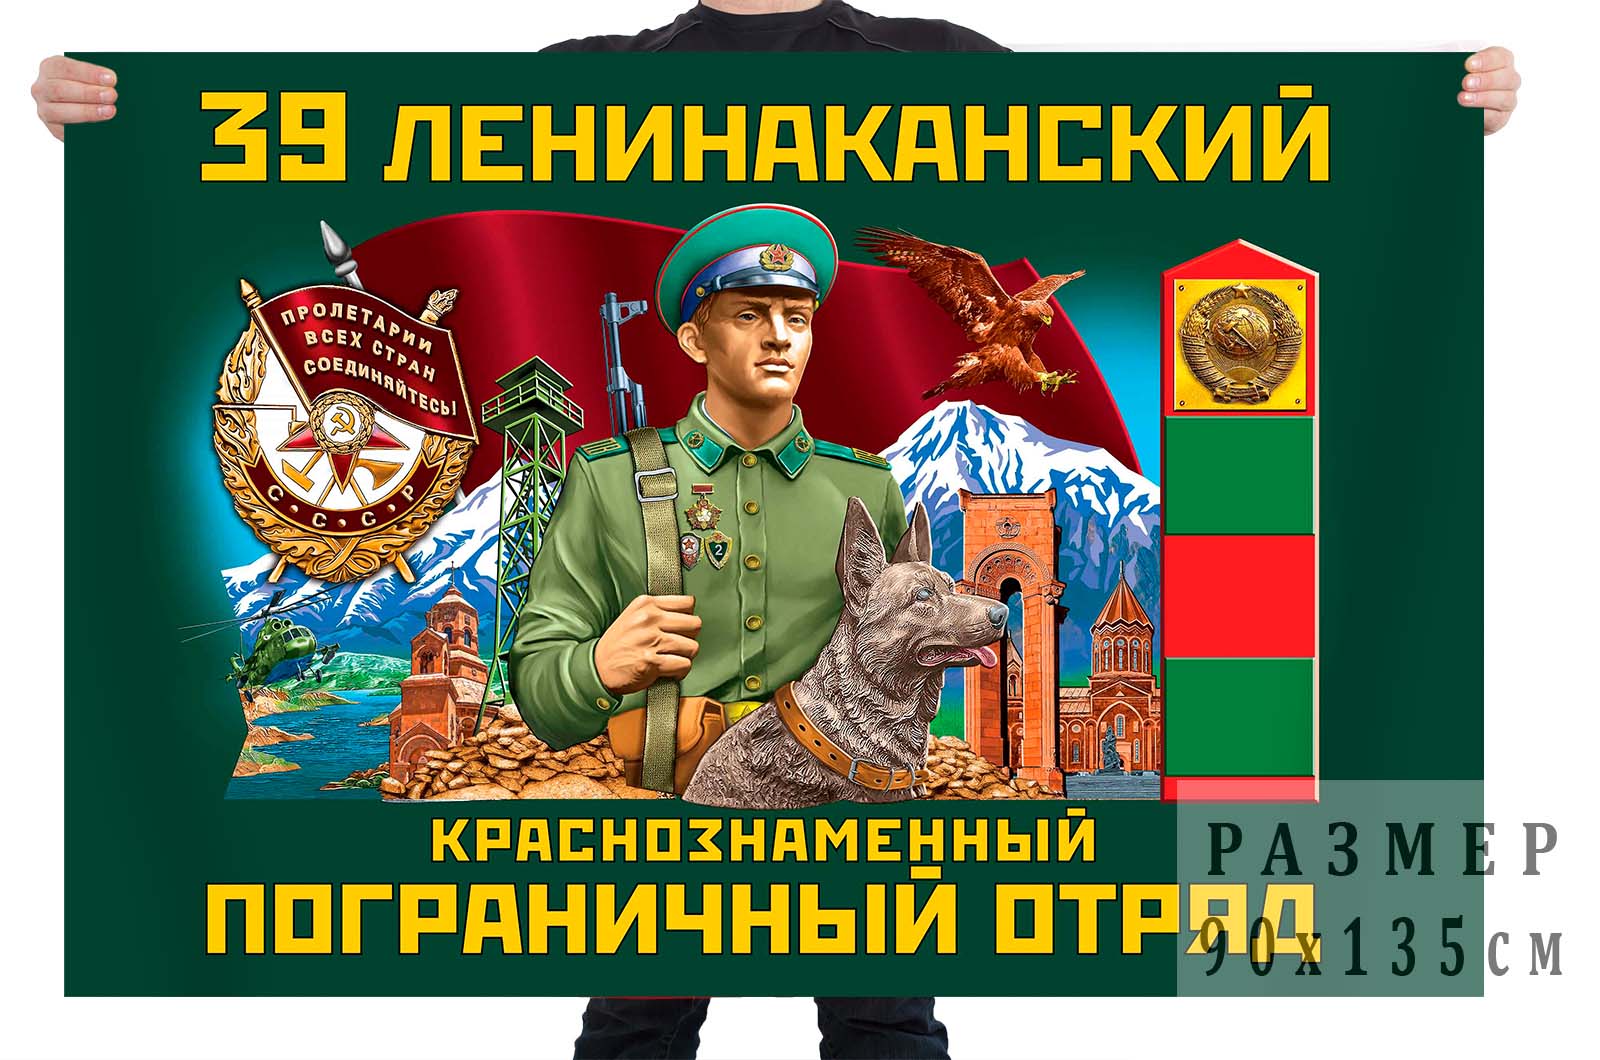 39 Ленинаканский пограничный отряд